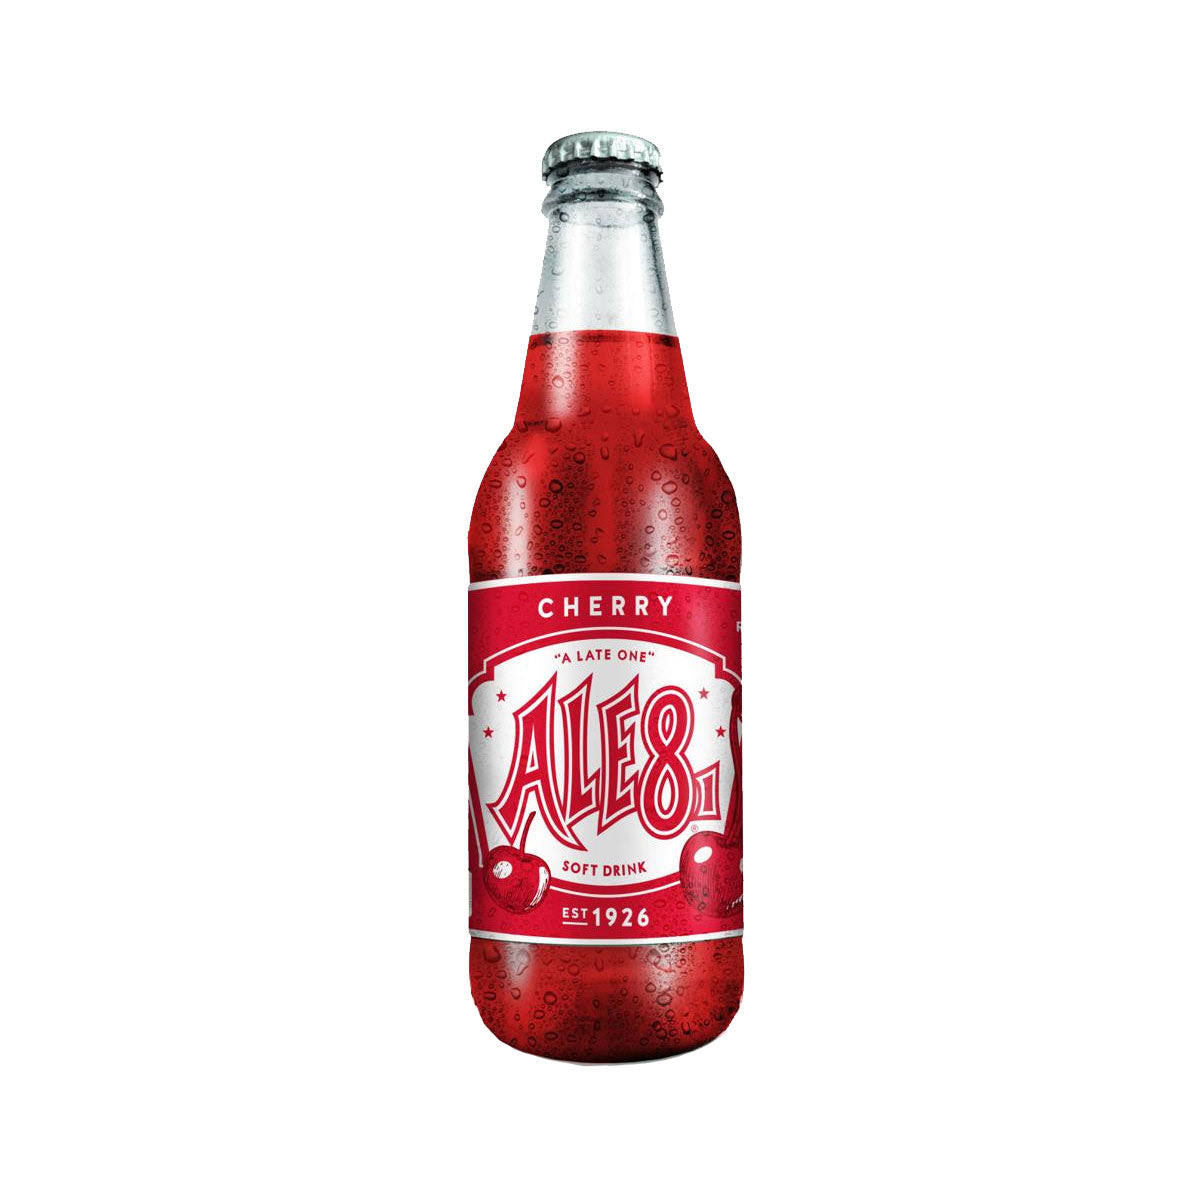 Ale-8-One Cherry Soda